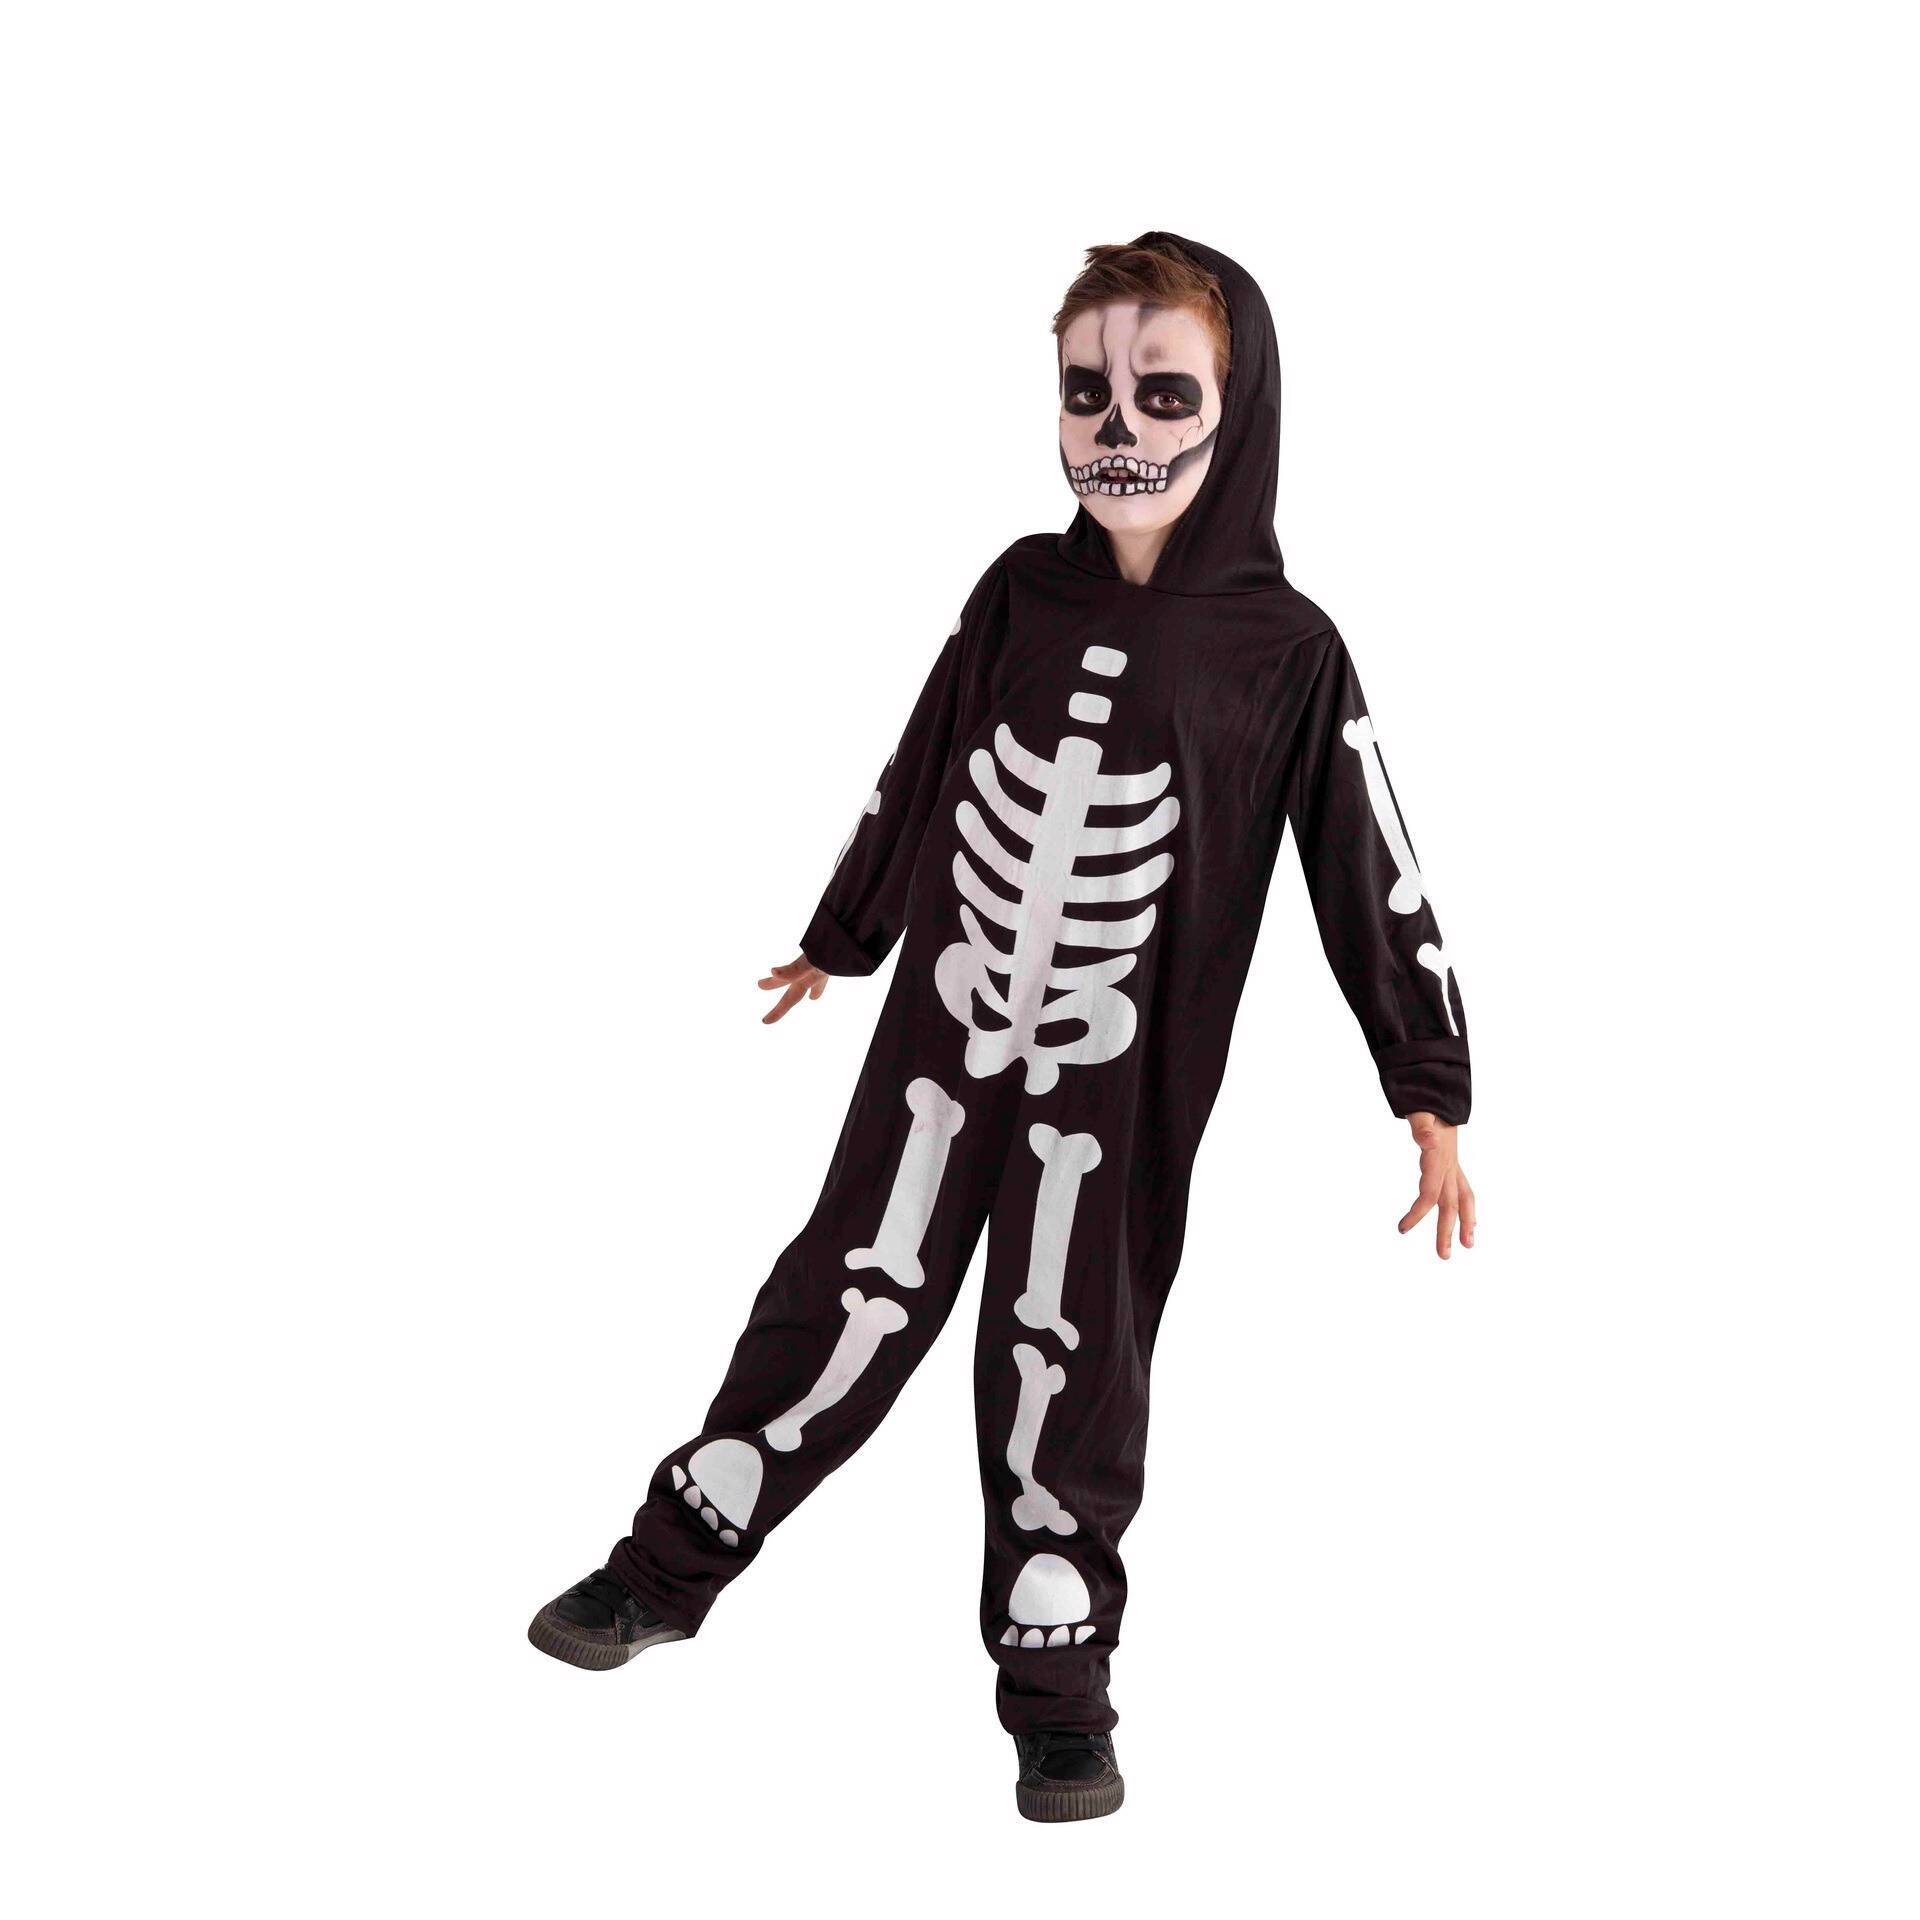 Fantasia Homem De Ferro E Esqueleto Halloween Infantil - Loja